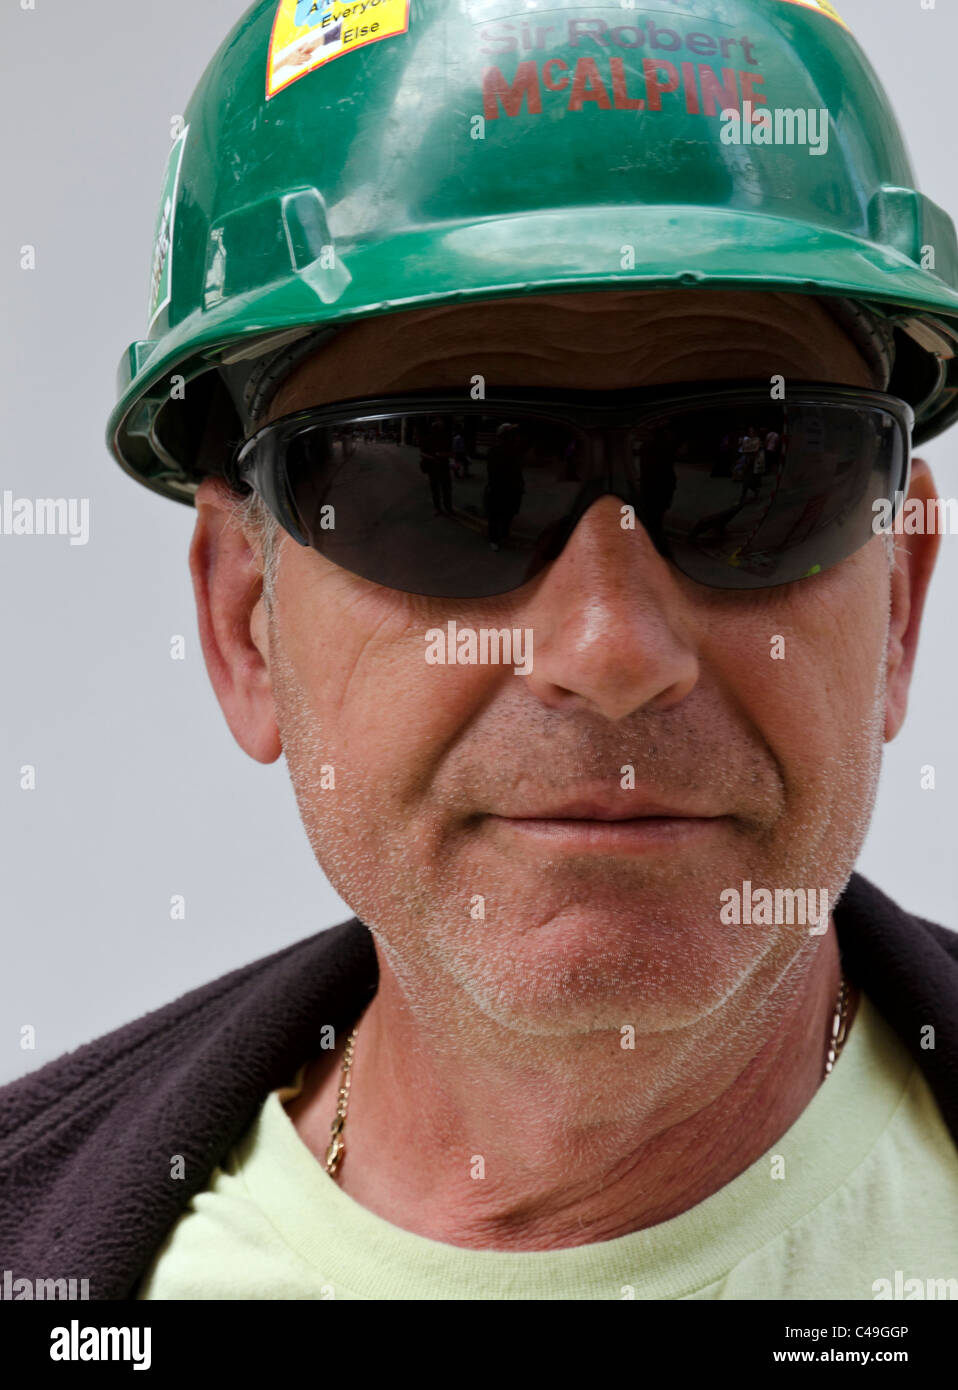 Ritratto di British lavoratore con casco verde e gli occhiali da sole sul sito con sfondo bianco, Londra, Inghilterra, Gran Bretagna, Regno Unito Foto Stock